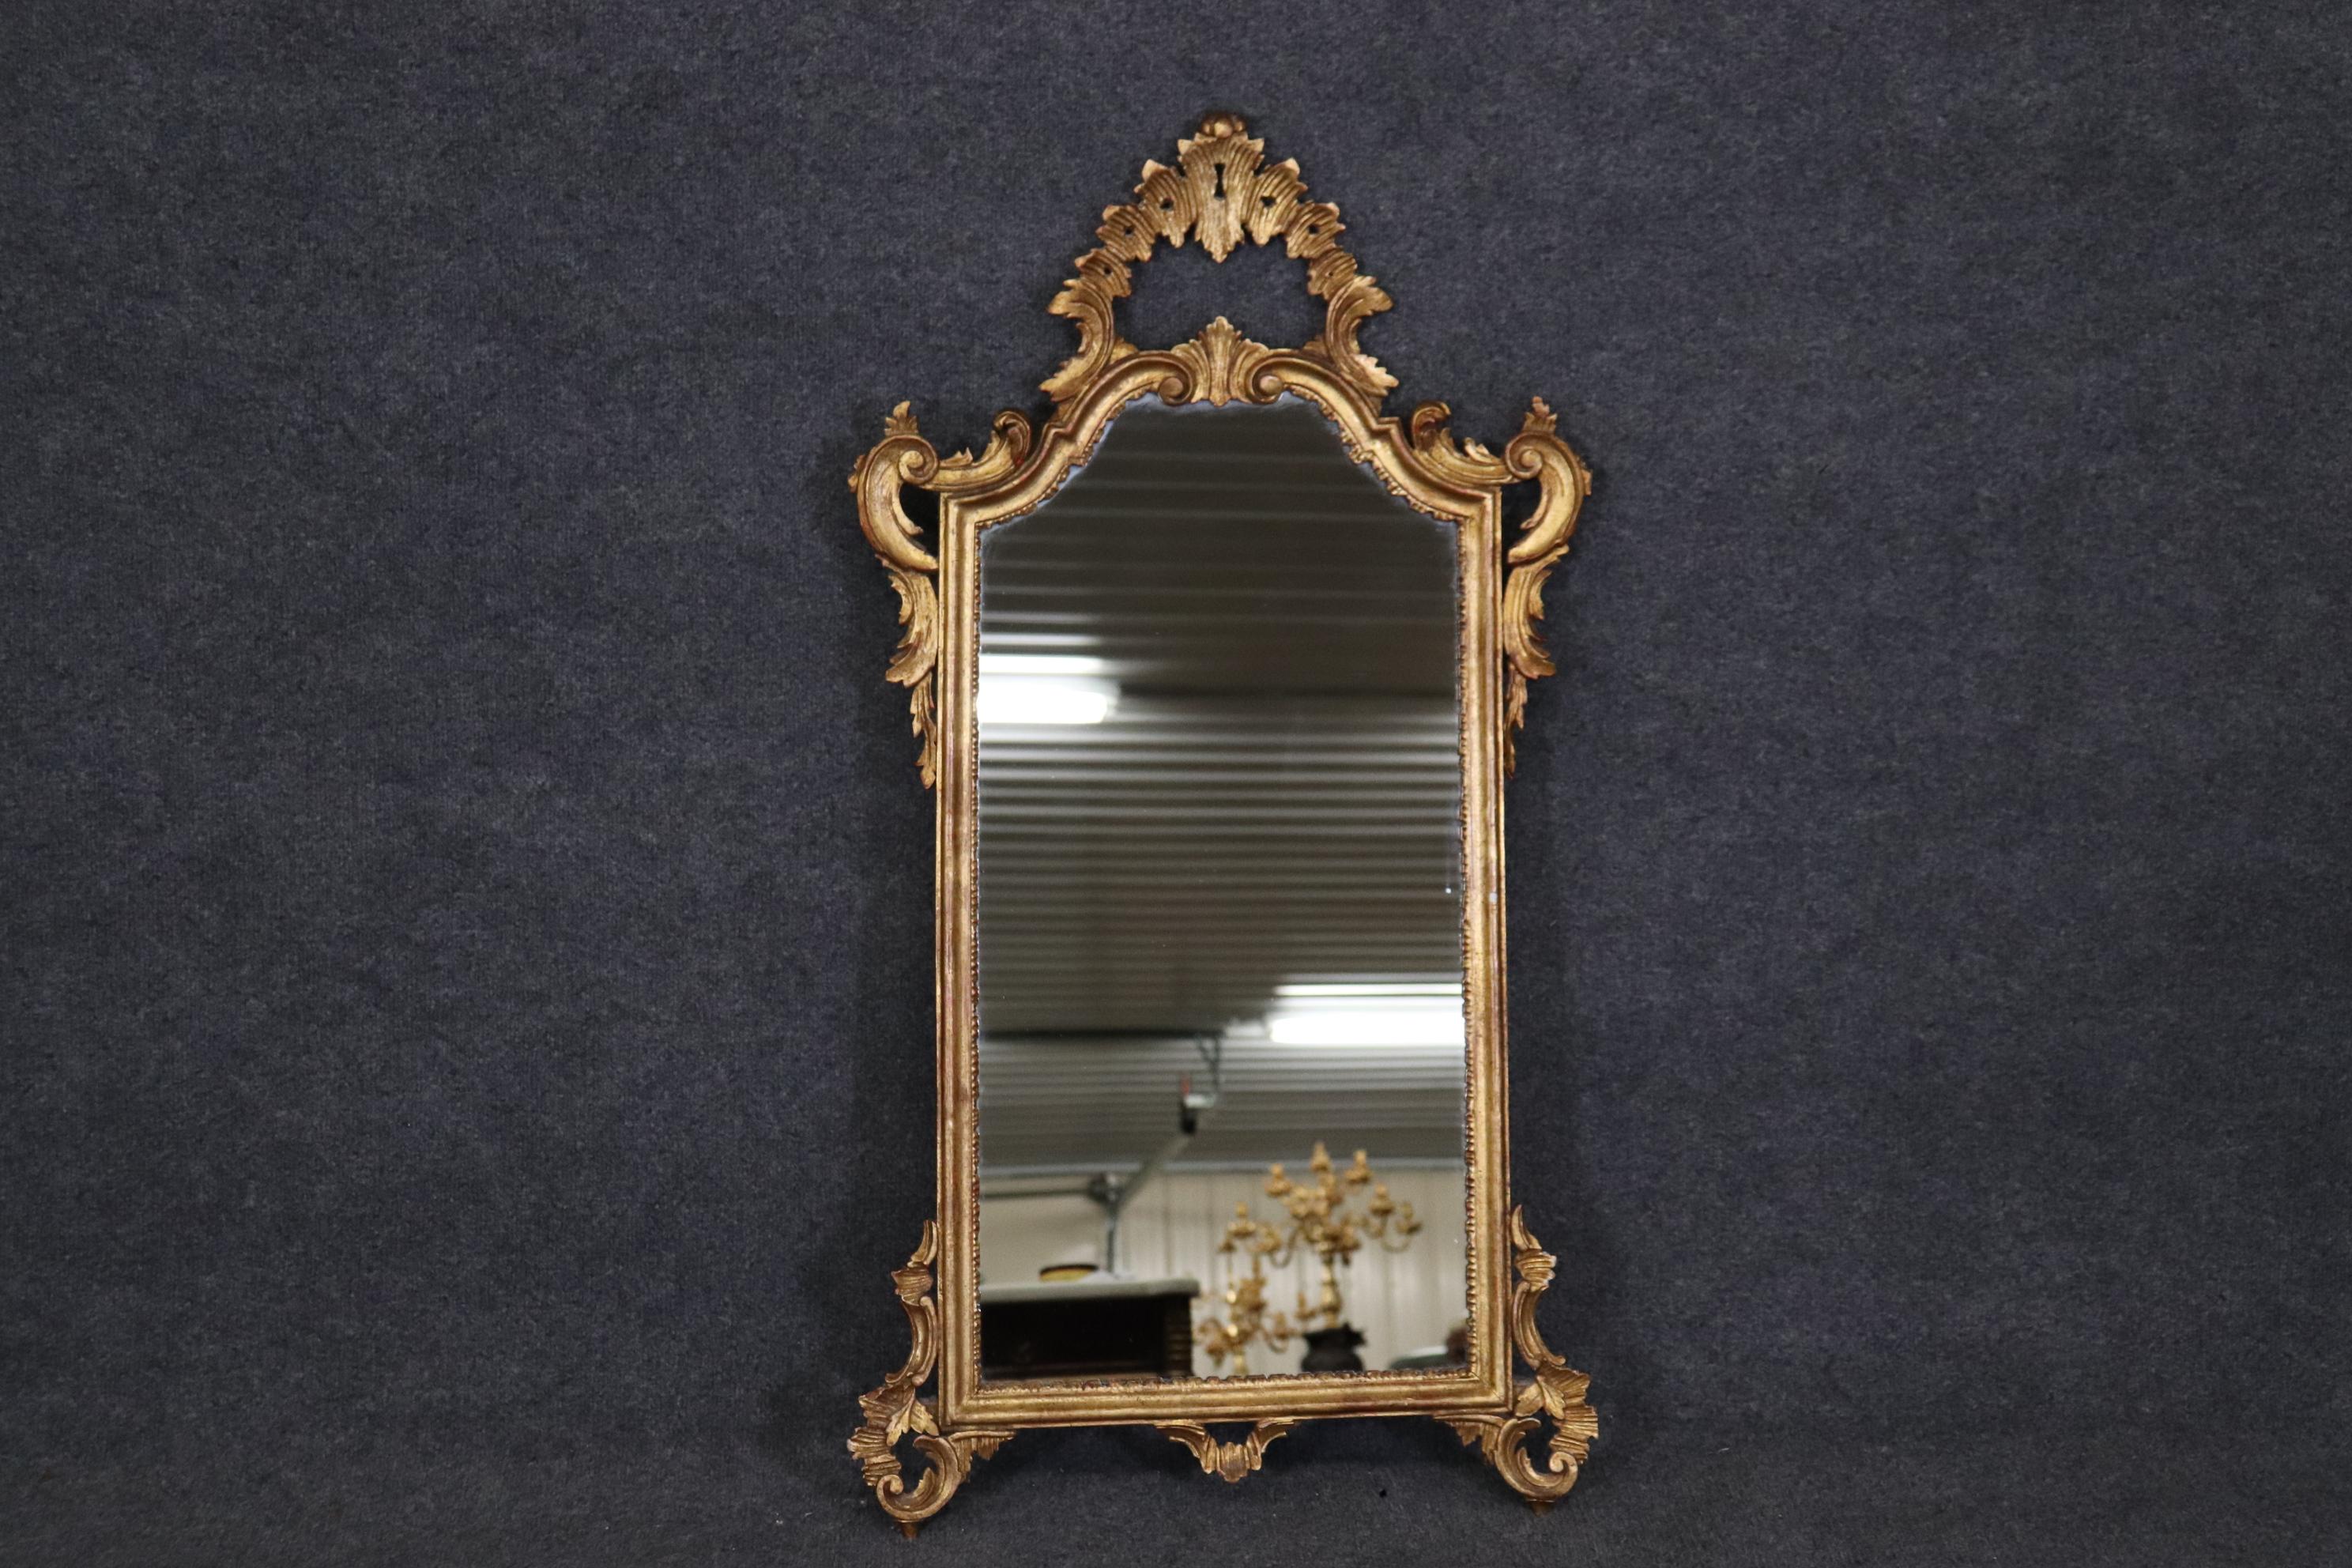 Abmessungen- H: 42 1/2 in B: 22 3/4 in T: 3 3/4 in

Diese italienische Rokoko-Stil Gold vergoldet Akzent Wand hängenden Spiegel ist wirklich ein luxuriöses Stück, das ein Gefühl von Luxus und Charakter in Ihr Haus oder Ort der Wahl bringen wird! 